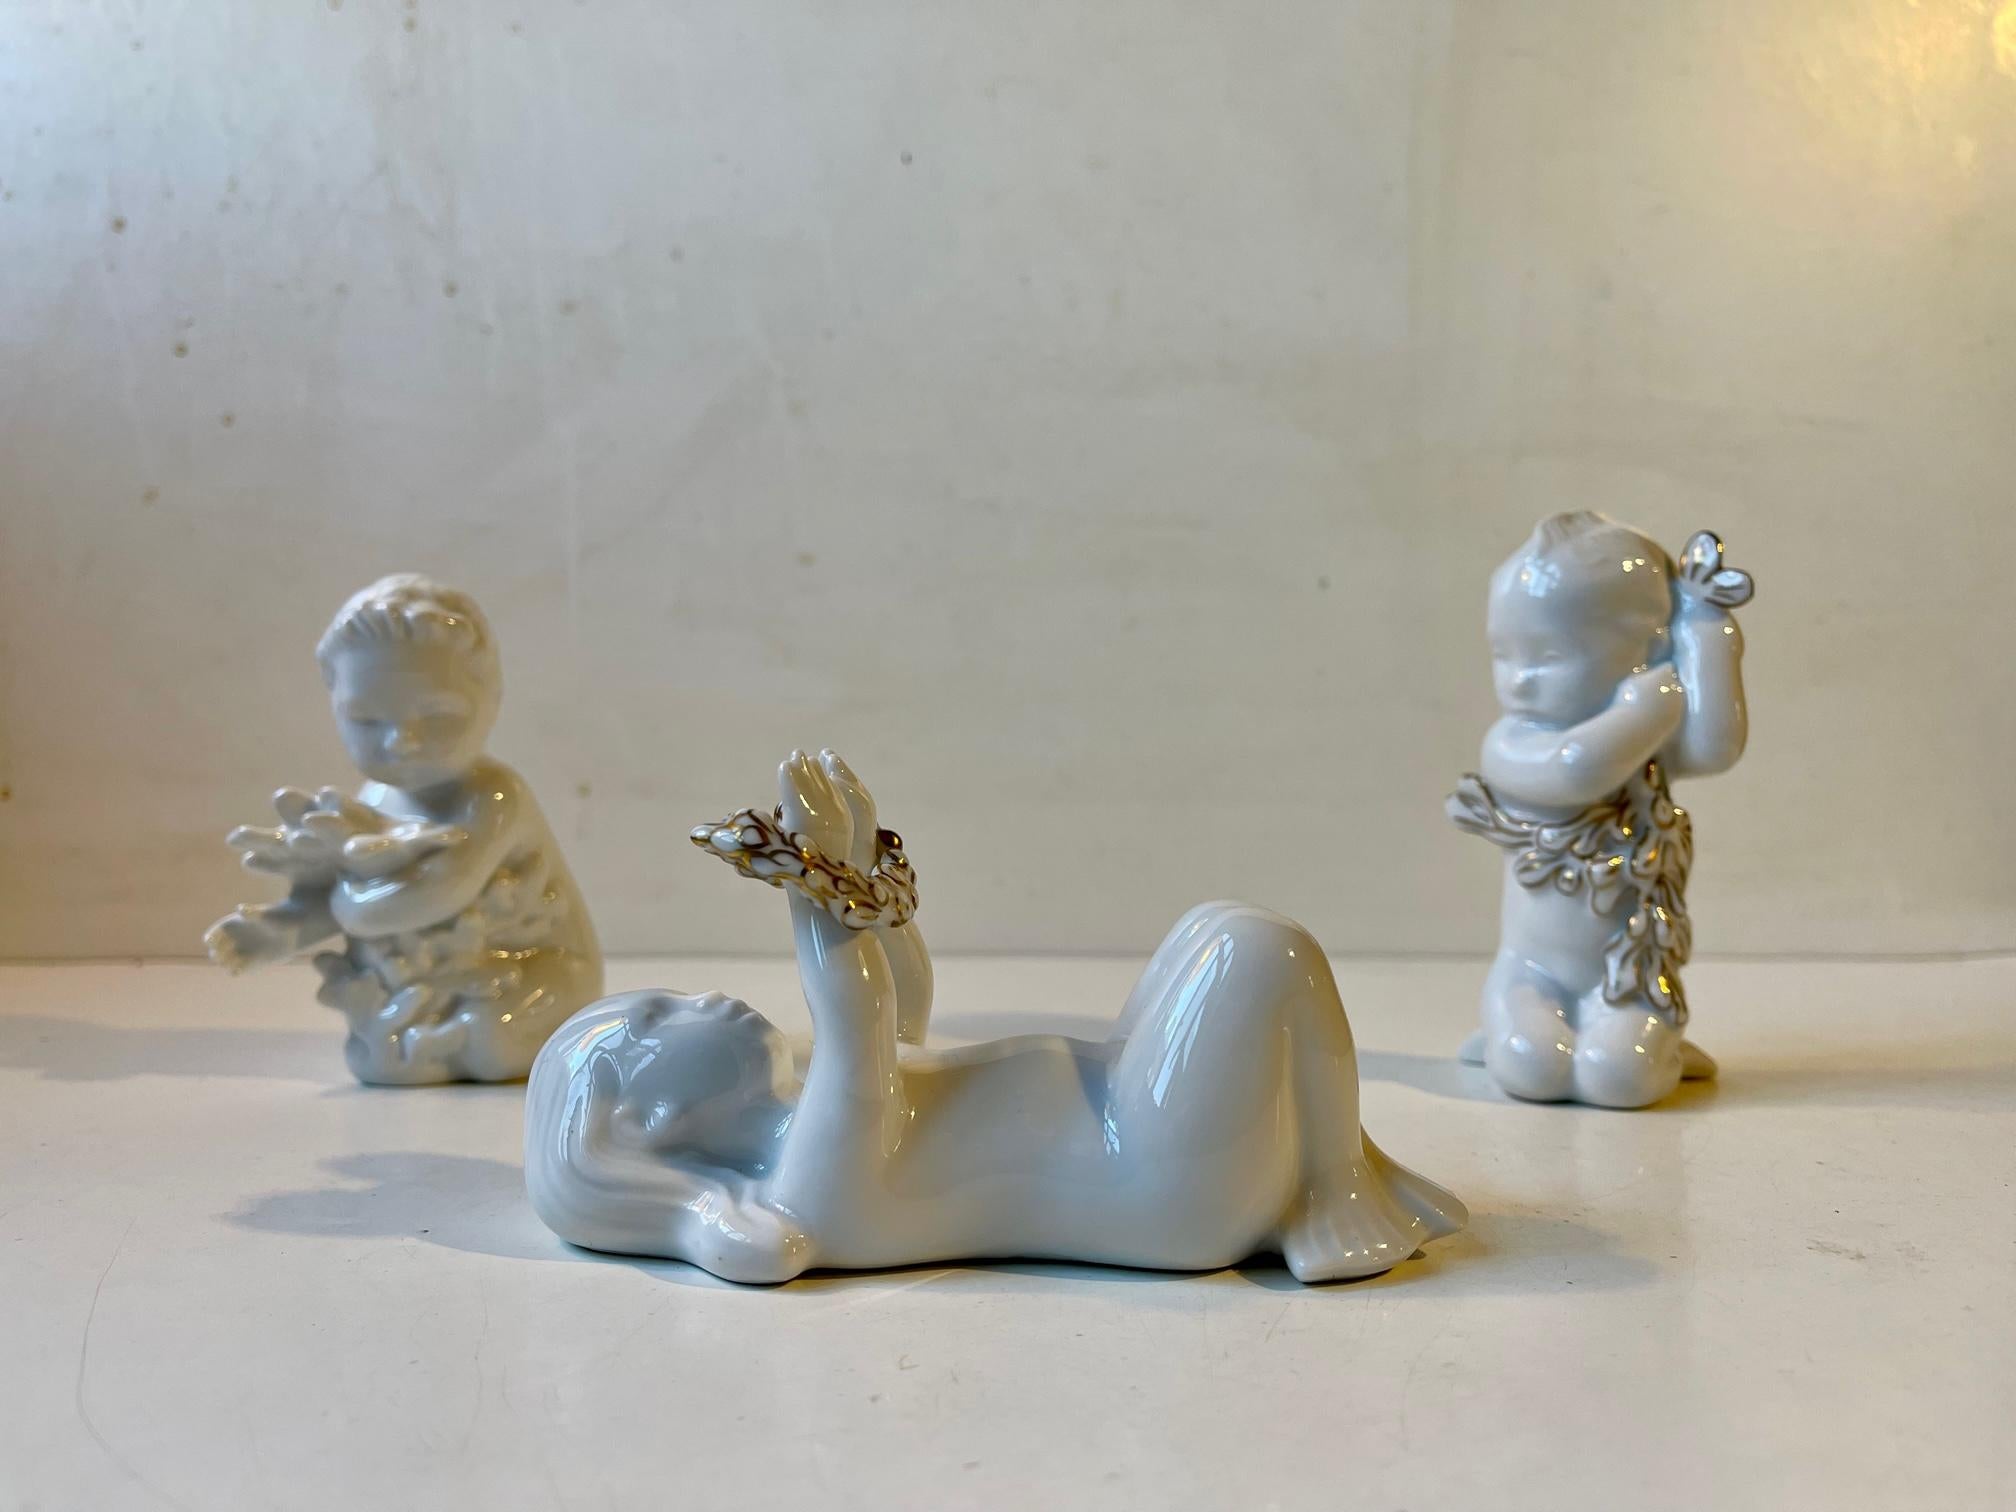 Un groupe de figurines en porcelaine blanc de chine dont deux sont des éditions spéciales décorées d'une glaçure dorée. On les appelle les enfants des océans et ils sont perçus comme la progéniture d'une sirène. Conçu par Ebbe Sadolin et Svend